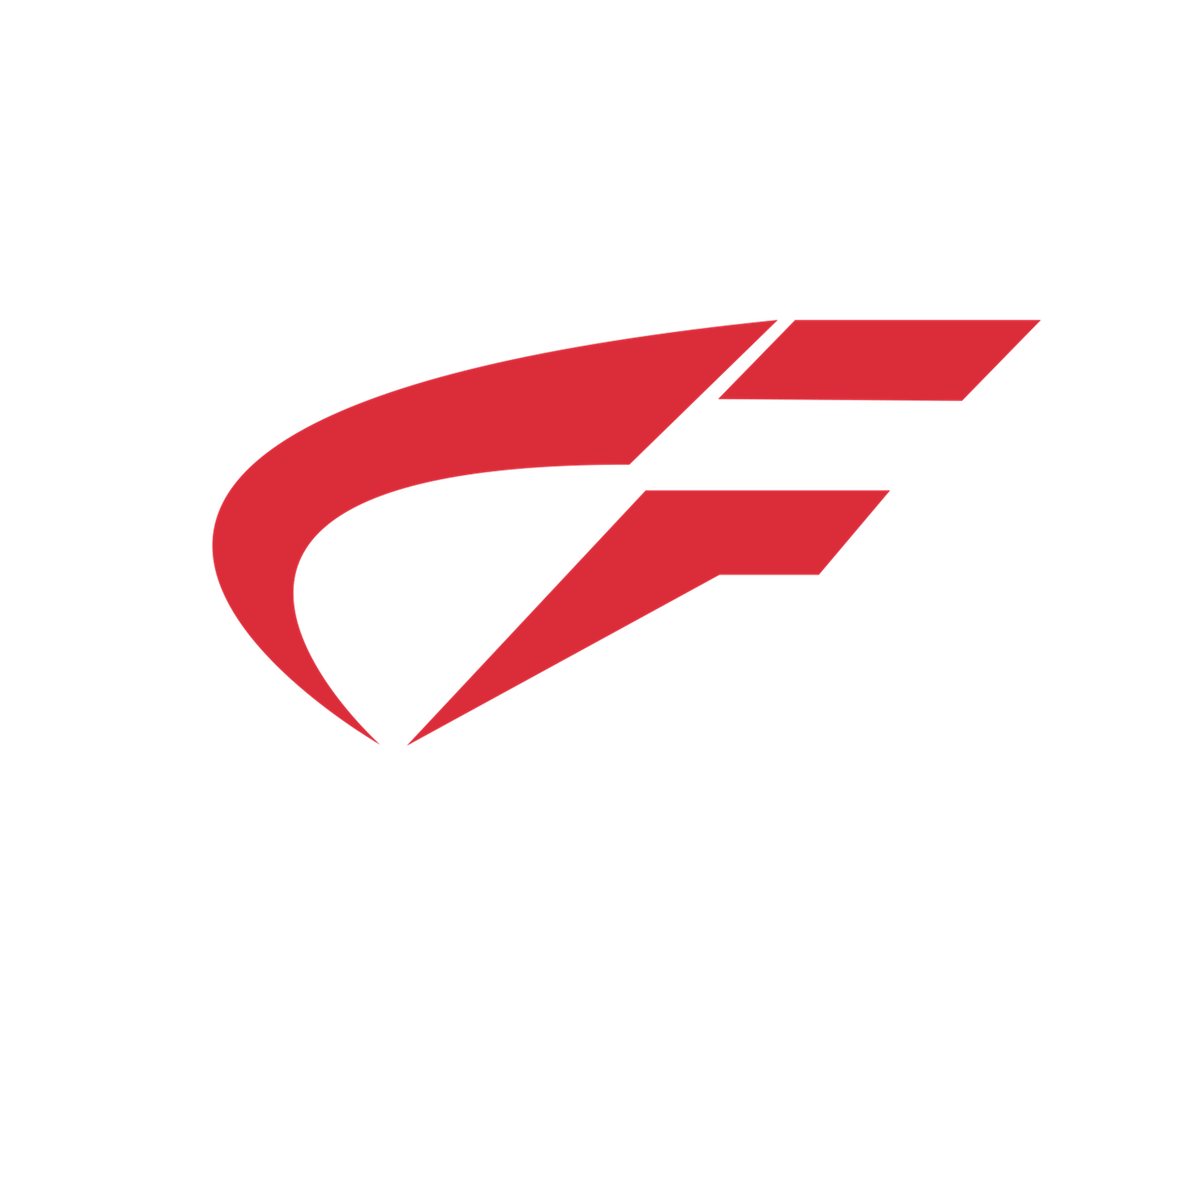 CoupleyFit